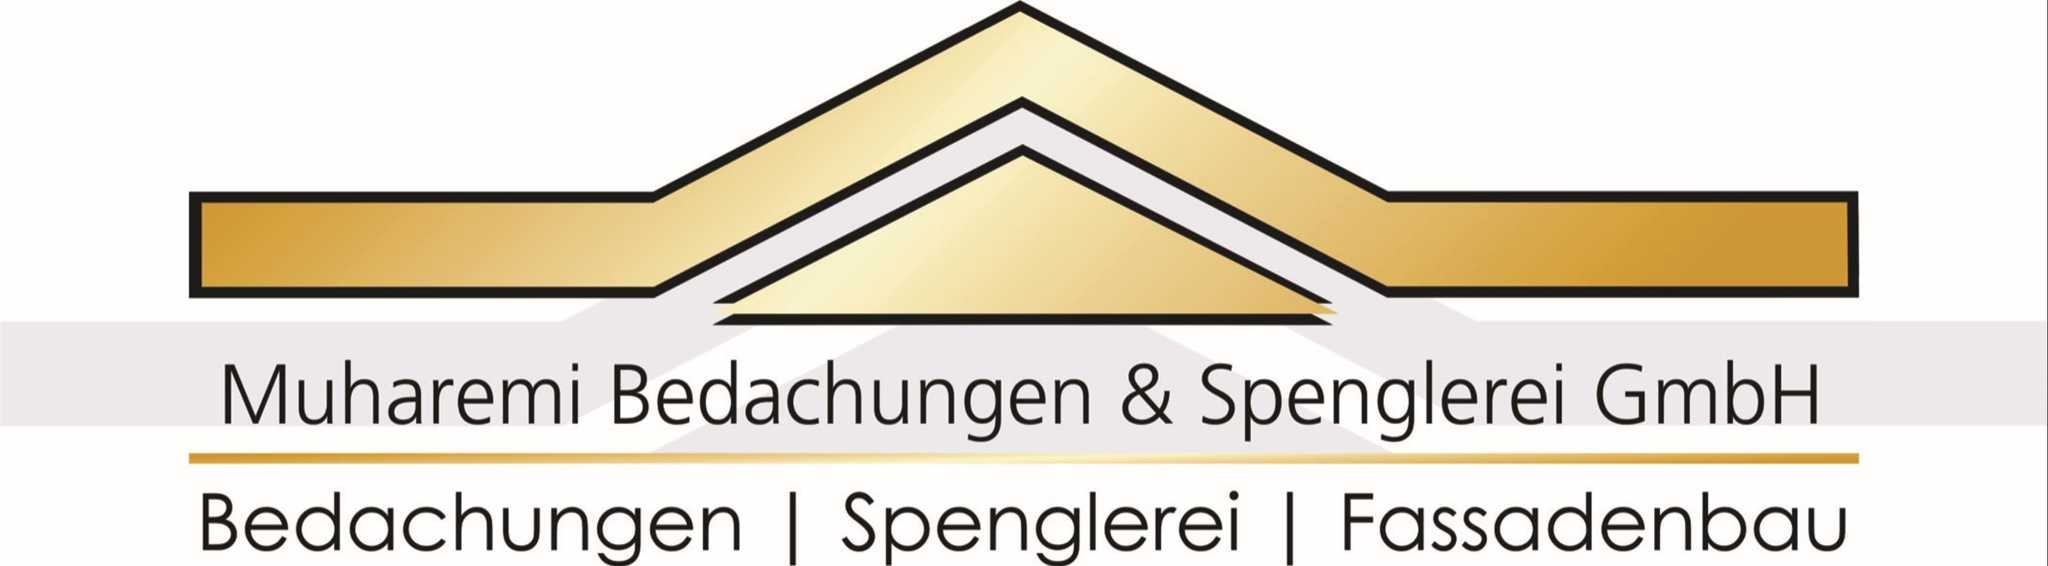 Muharemi Bedachungen & Spenglerei GmbH